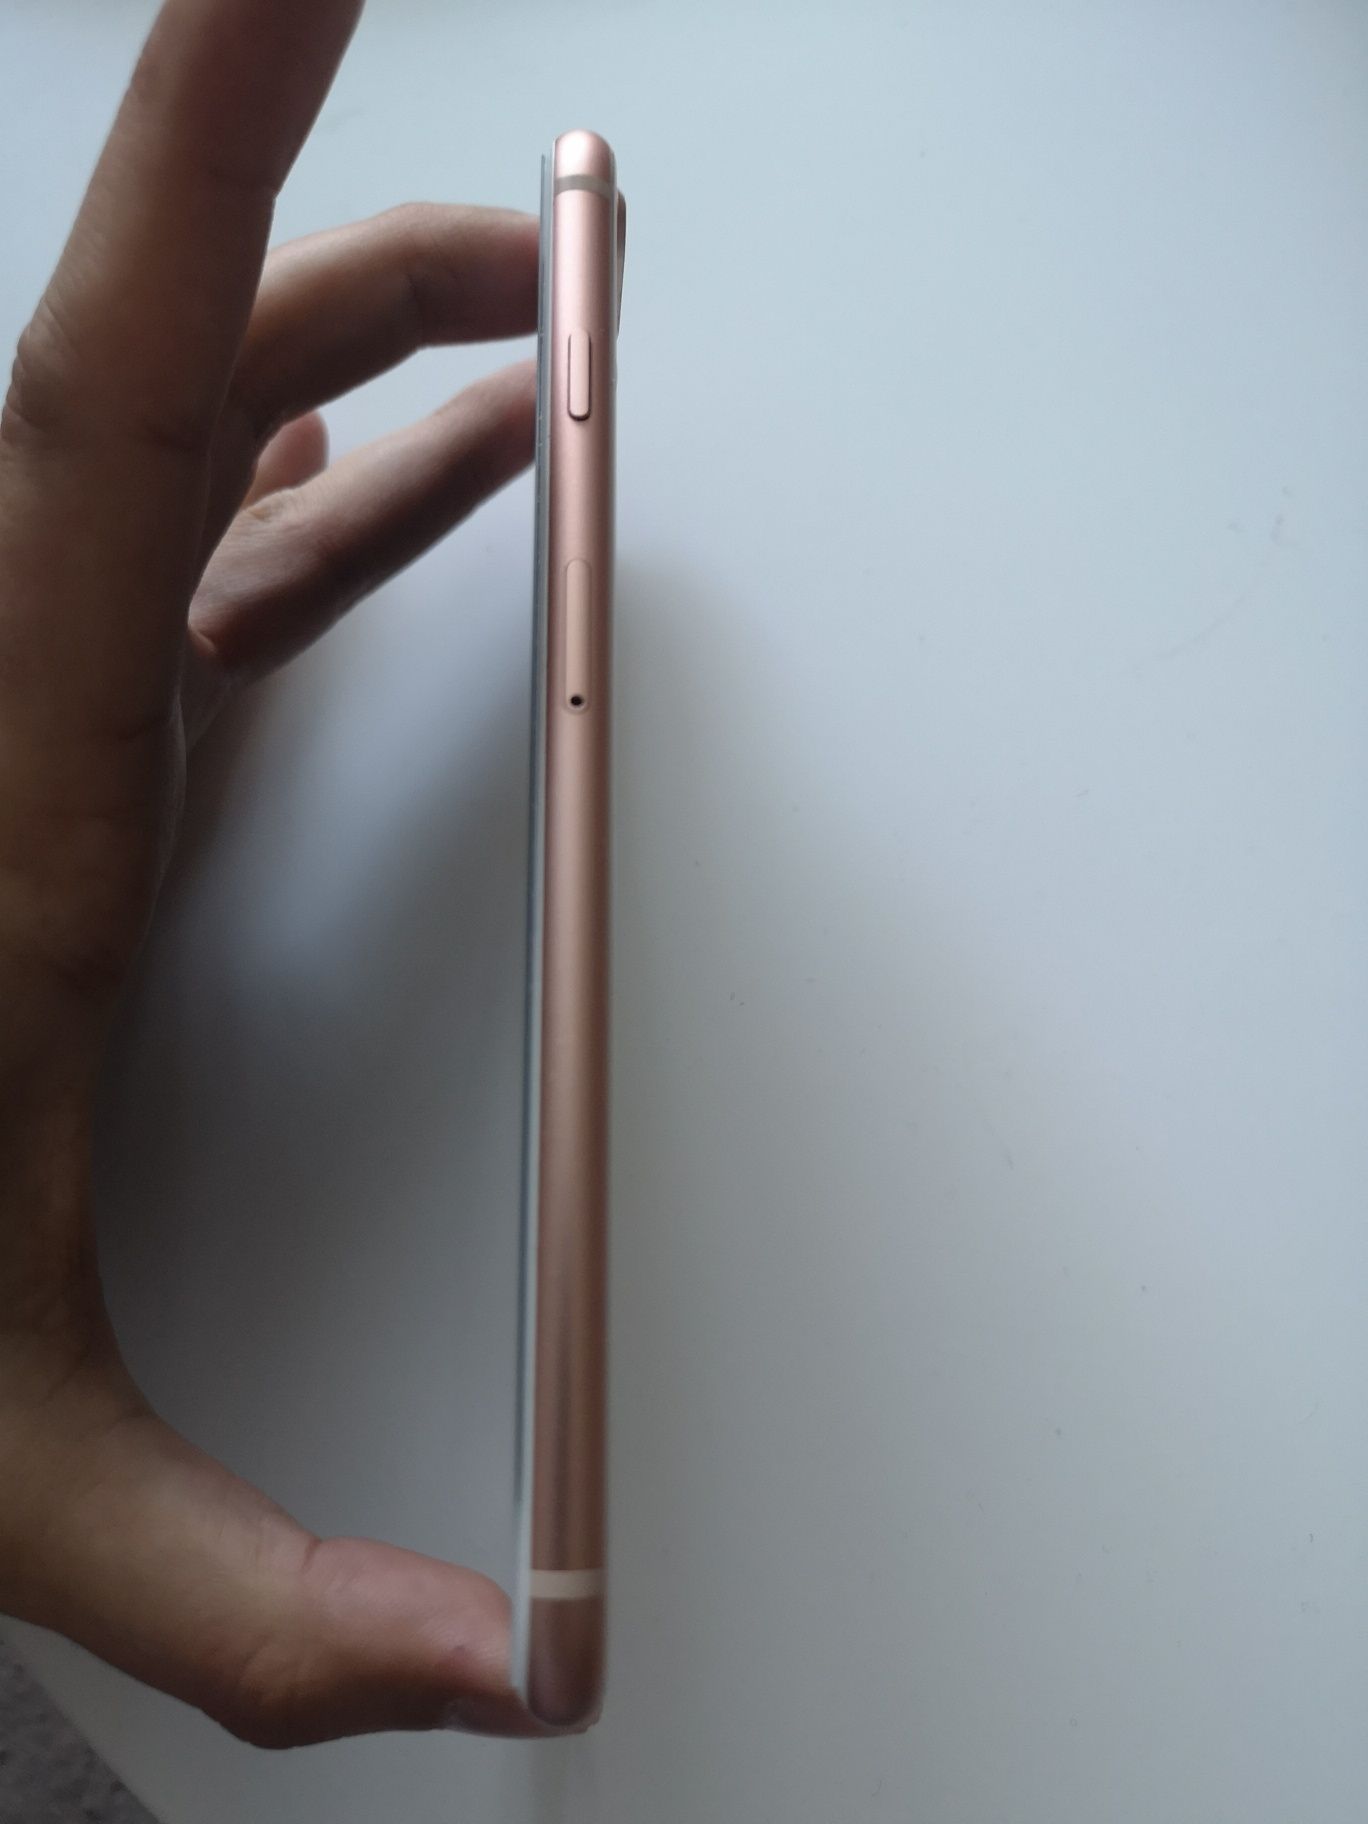 Iphone 8 Plus Rose Gold 64GB